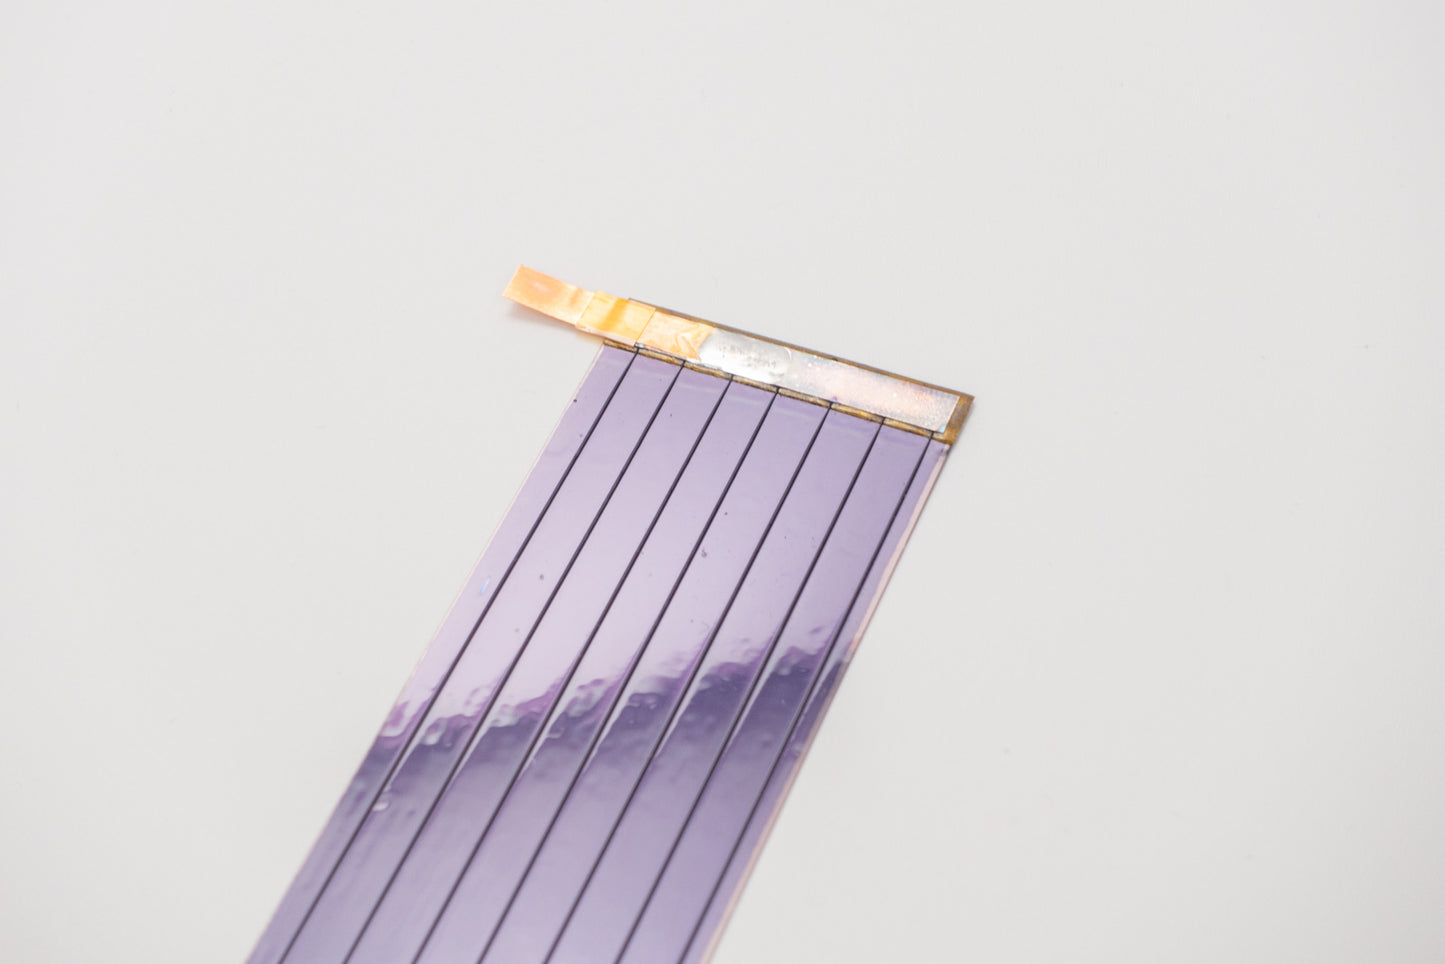 2V 0.35A A-Silicon Semi-Flexible Solar Cell